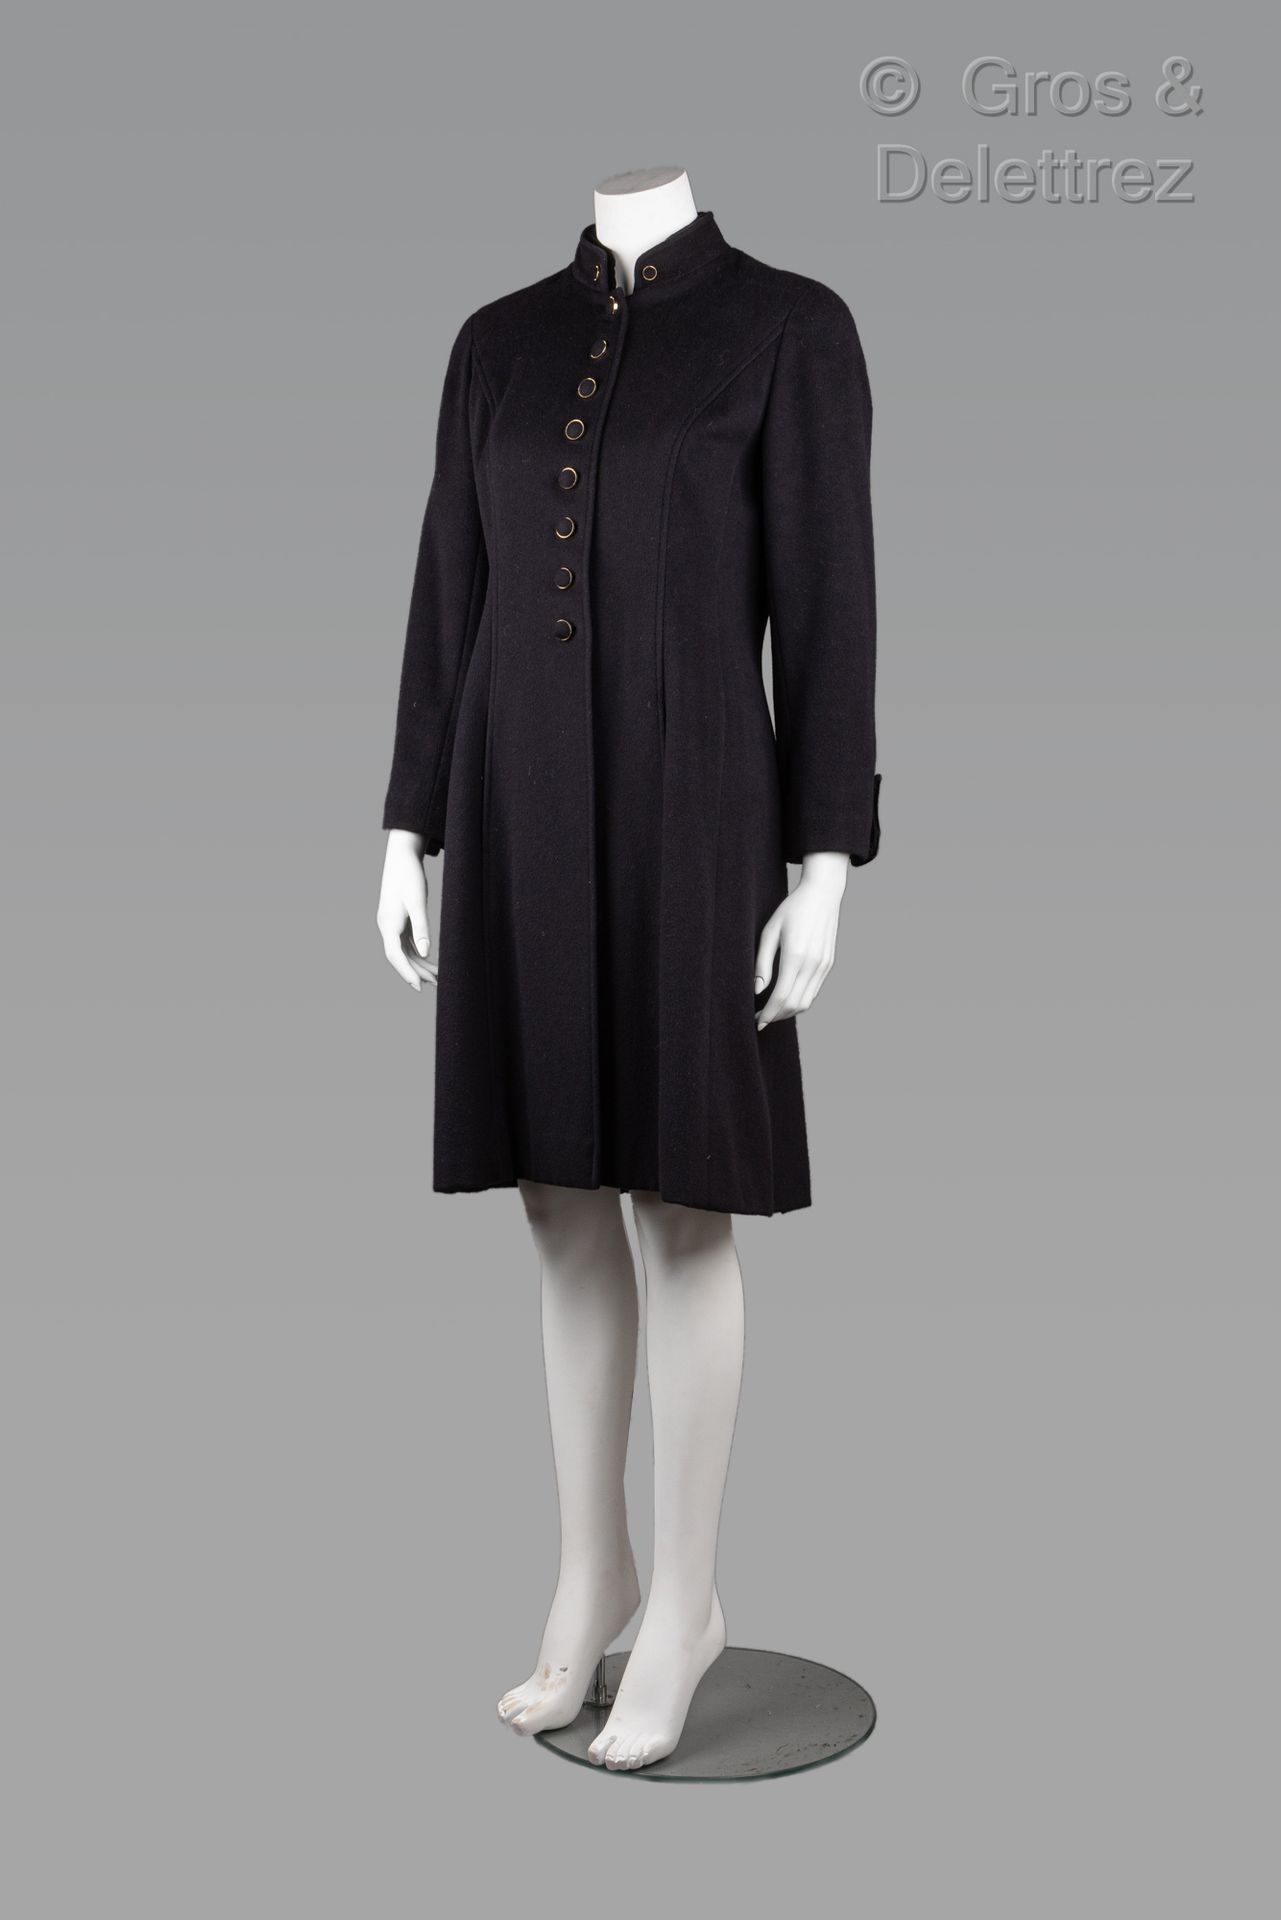 Null 卡尔-拉格斐的香奈儿专卖店

约1992年

黑色羊绒大衣，小双领，部分颜色为天鹅绒，单排扣，长袖，缝中有两个垂直口袋。黑色标签，白色图案。